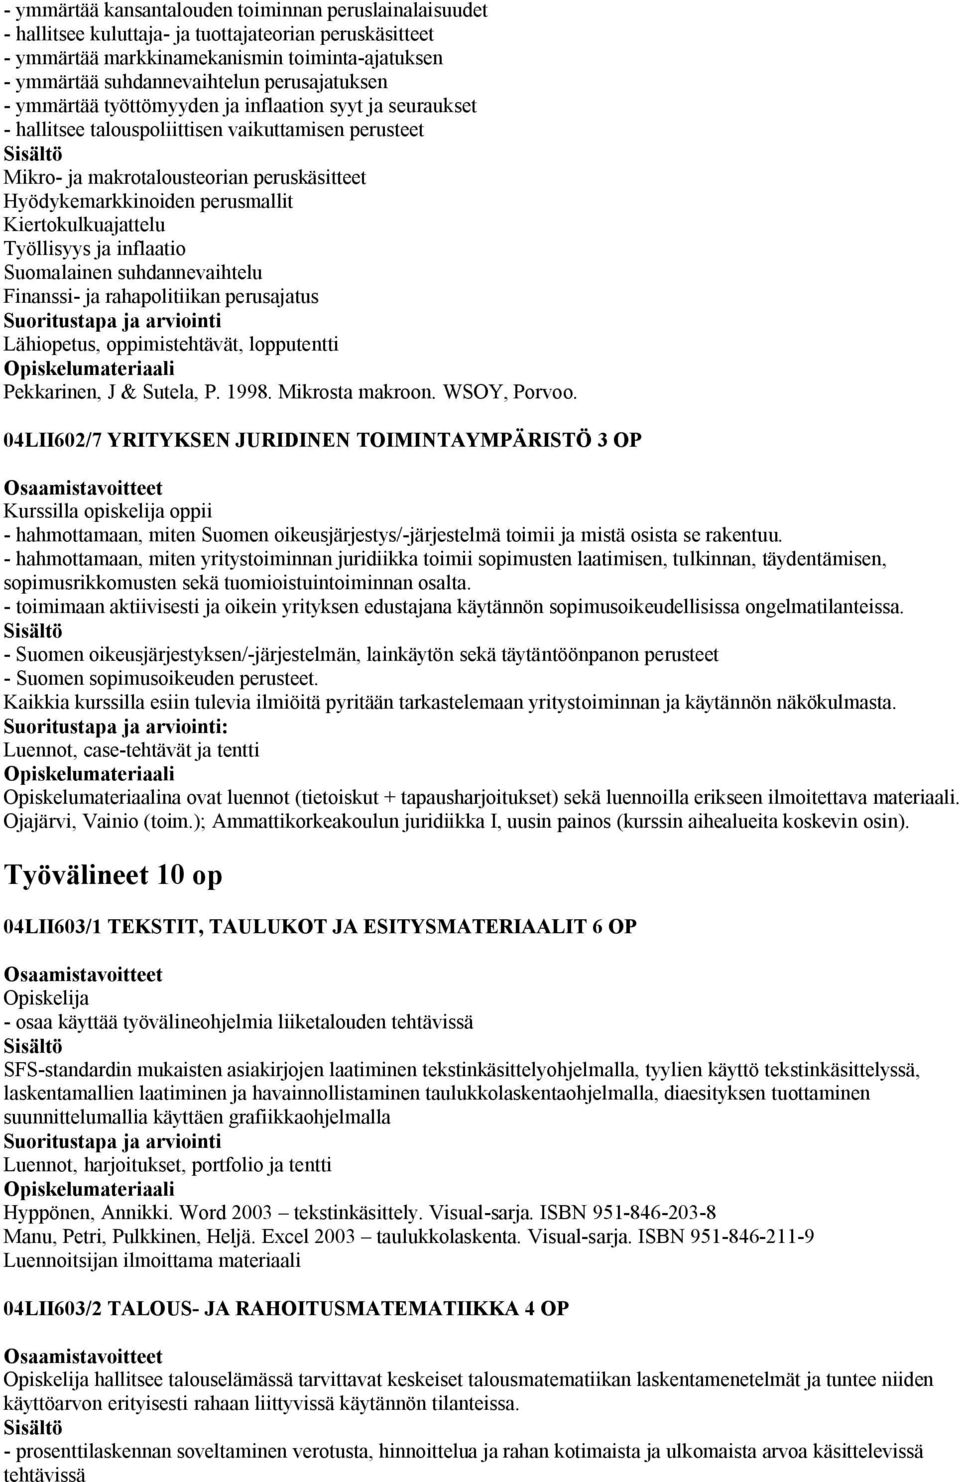 perusmallit Kiertokulkuajattelu Työllisyys ja inflaatio Suomalainen suhdannevaihtelu Finanssi- ja rahapolitiikan perusajatus Lähiopetus, oppimistehtävät, lopputentti Pekkarinen, J & Sutela, P. 1998.